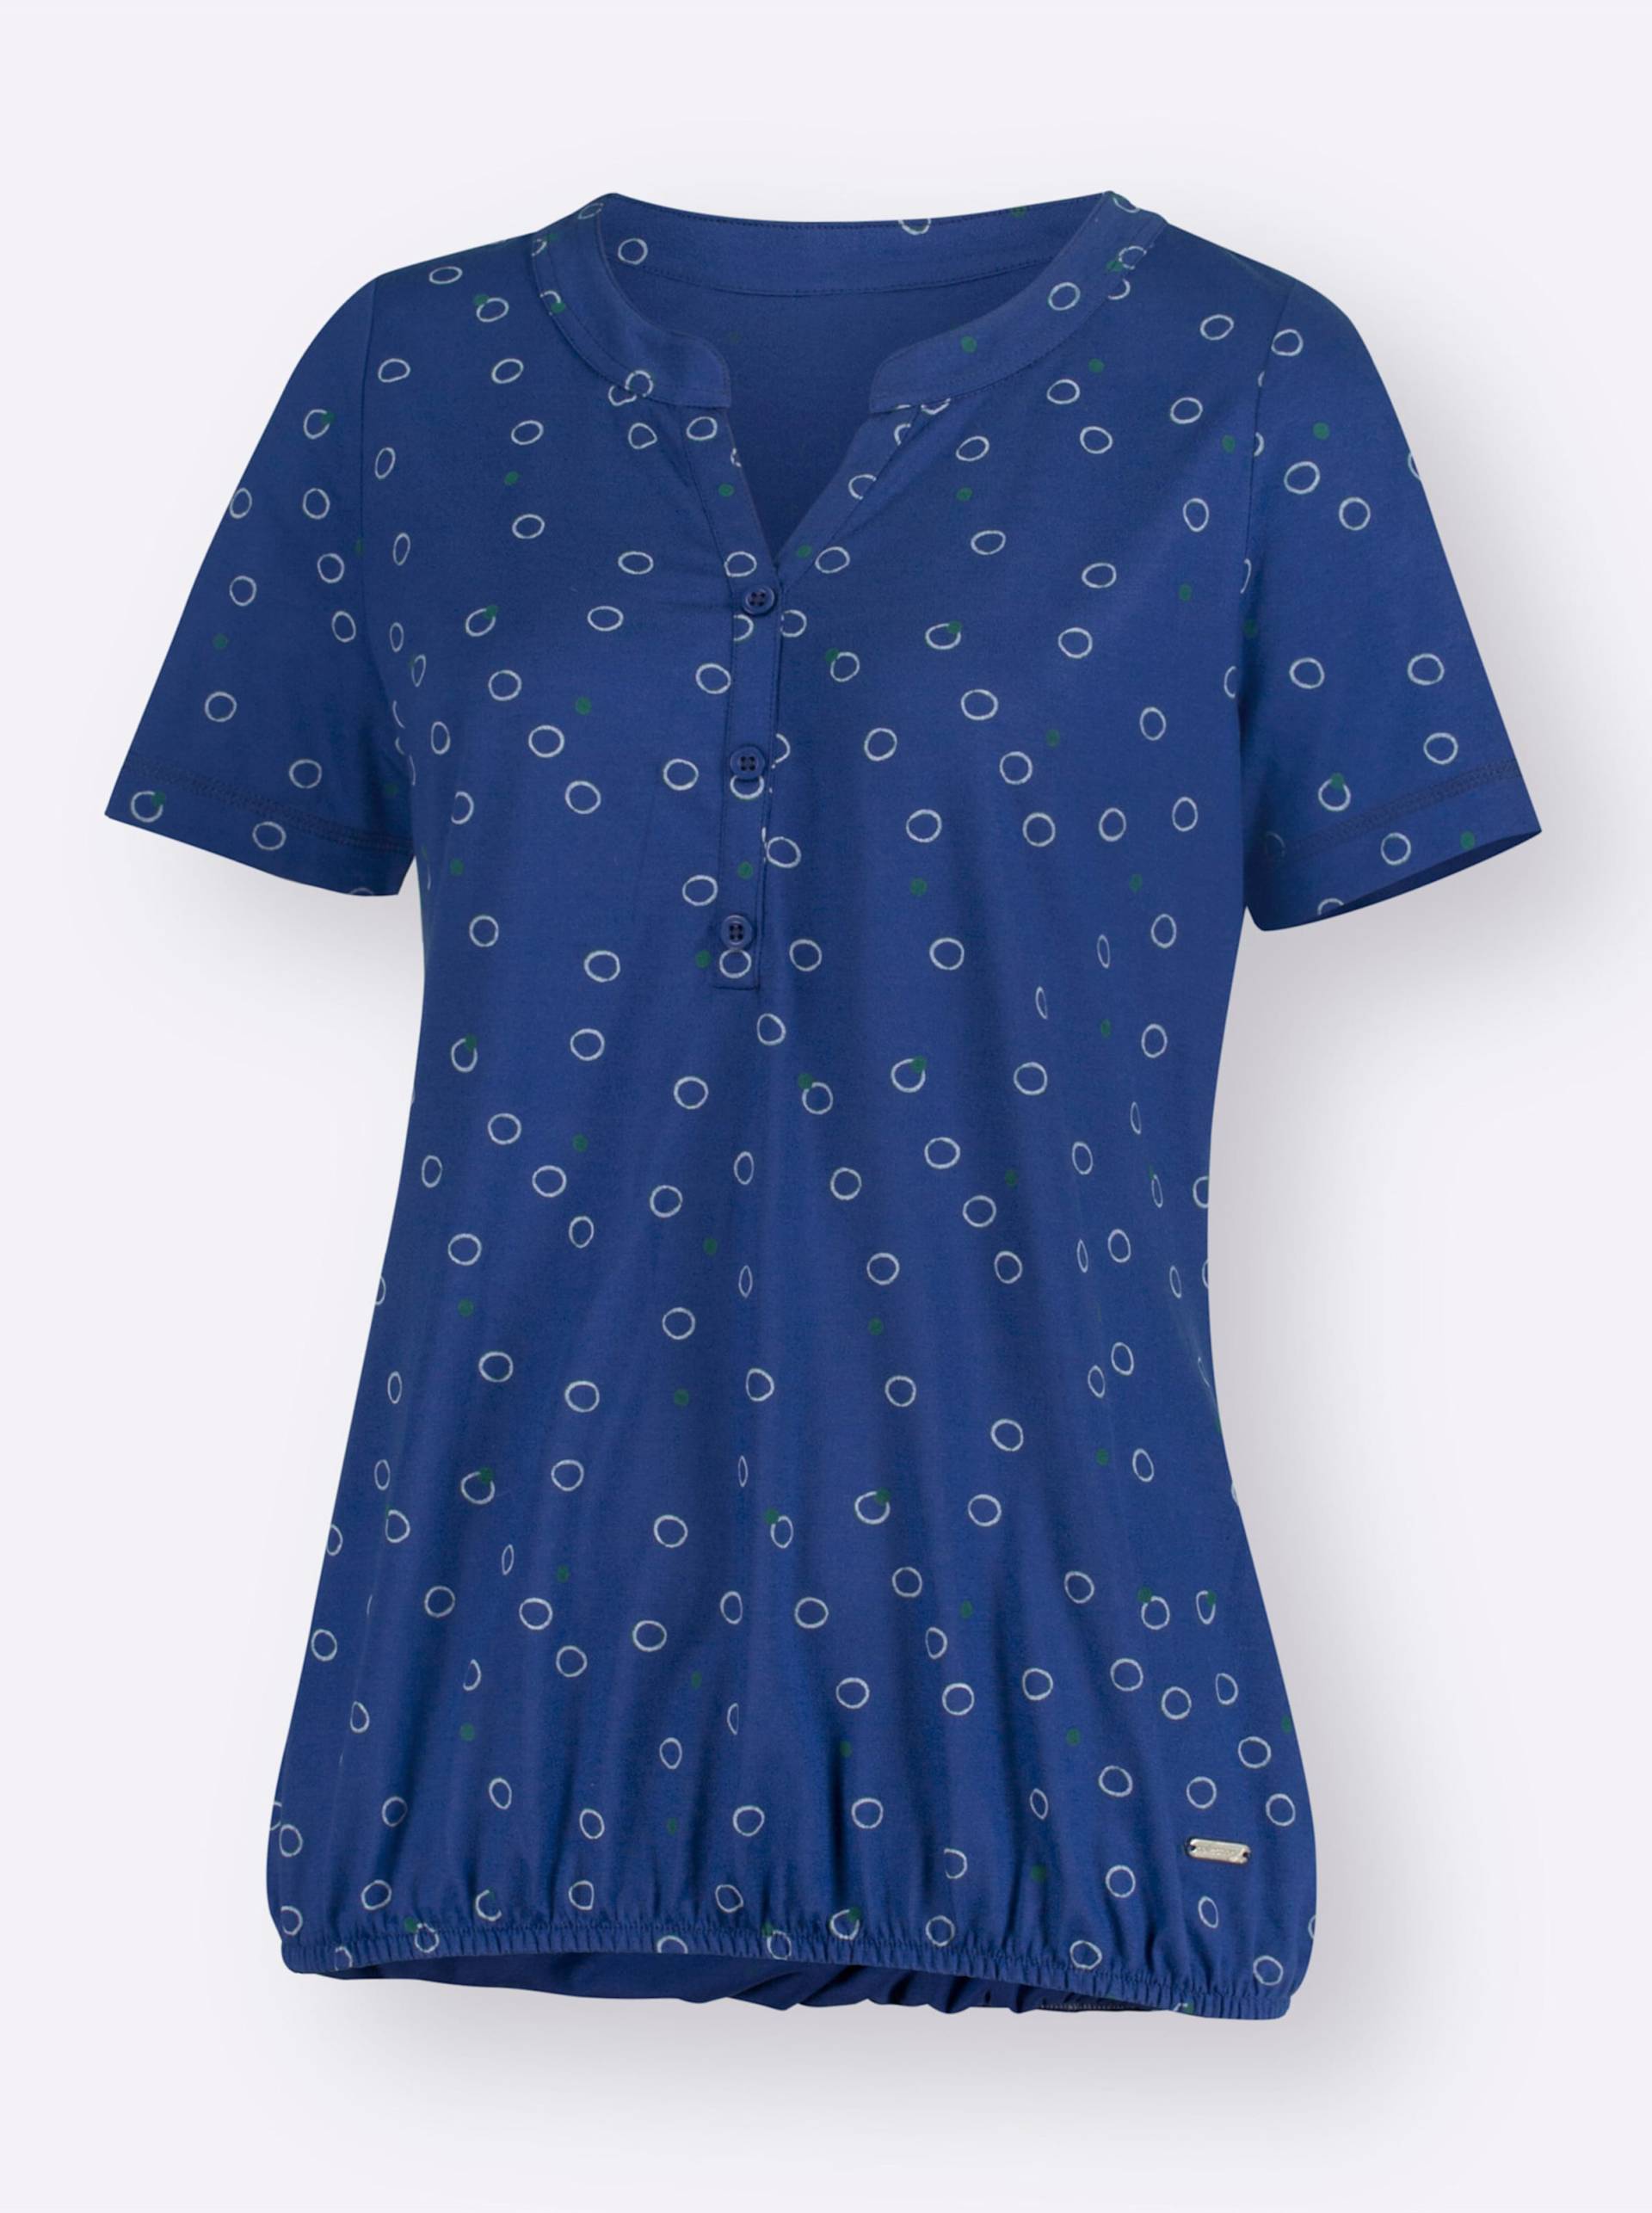 Print-Shirt in royalblau-weiss-bedruckt von heine